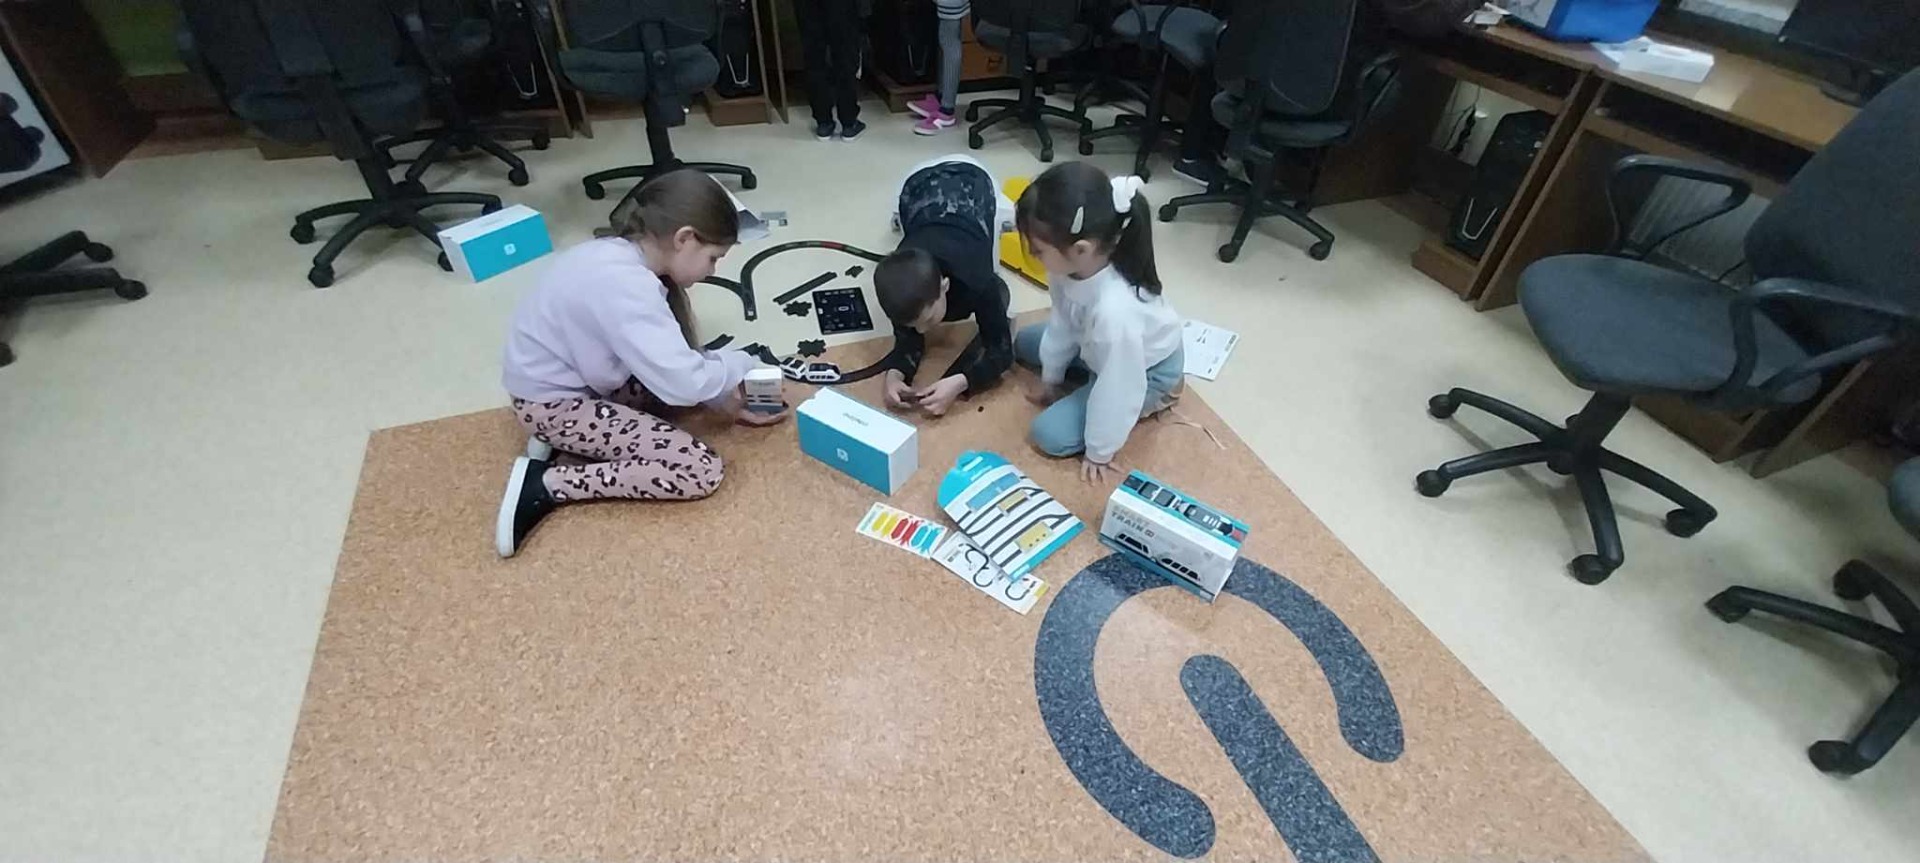 Uczniowie wykorzystują klocki edukacyjne na zajęciach informatycznych